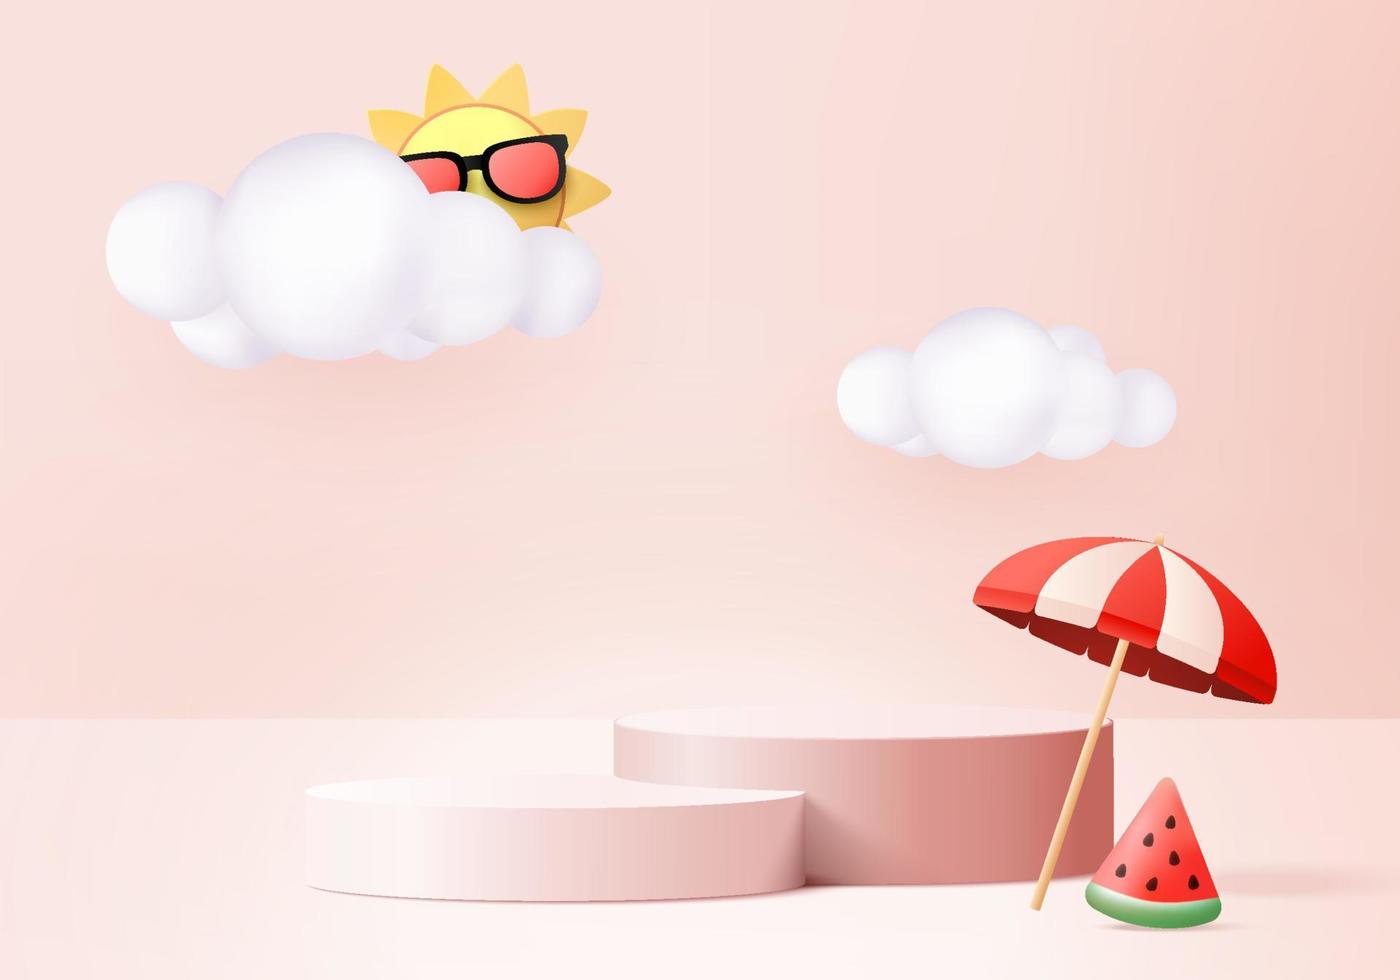 Escena del podio de la exhibición del producto del fondo del verano 3d con la plataforma de la nube. vector de verano de fondo render 3d con sol, sandía en el podio rosa. stand mostrar exhibición de productos cosméticos estudio rosa